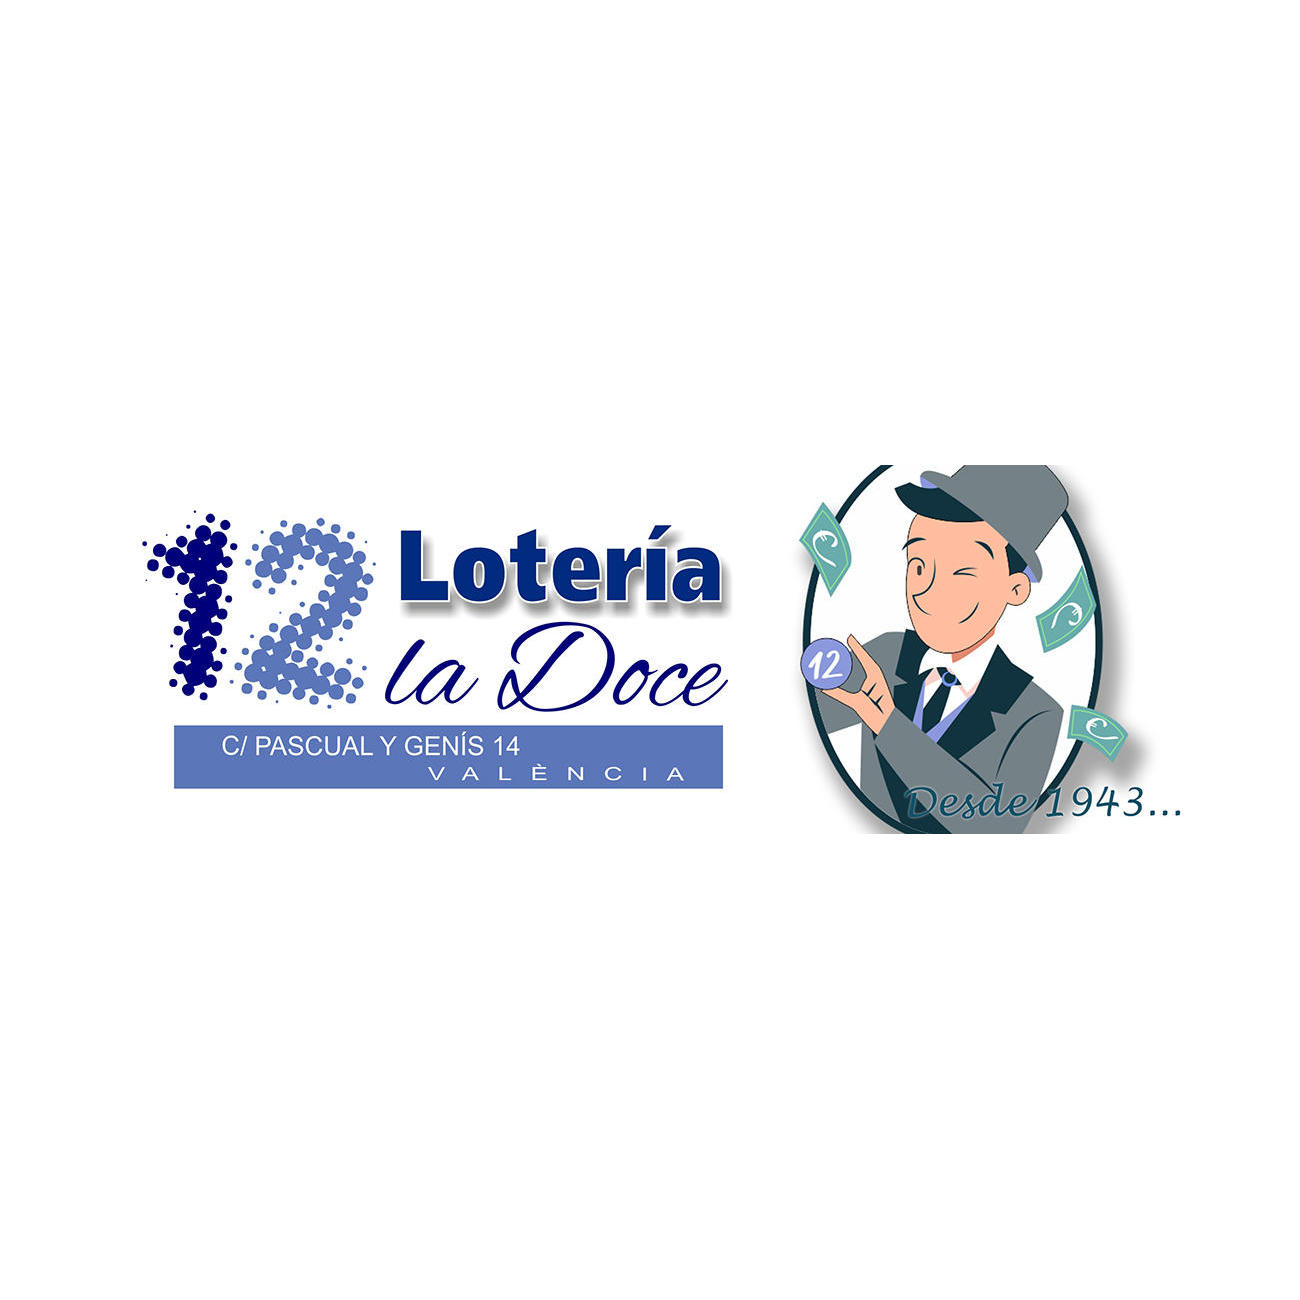 Administración de Loterías del Estado Nº 12 de Valencia Logo